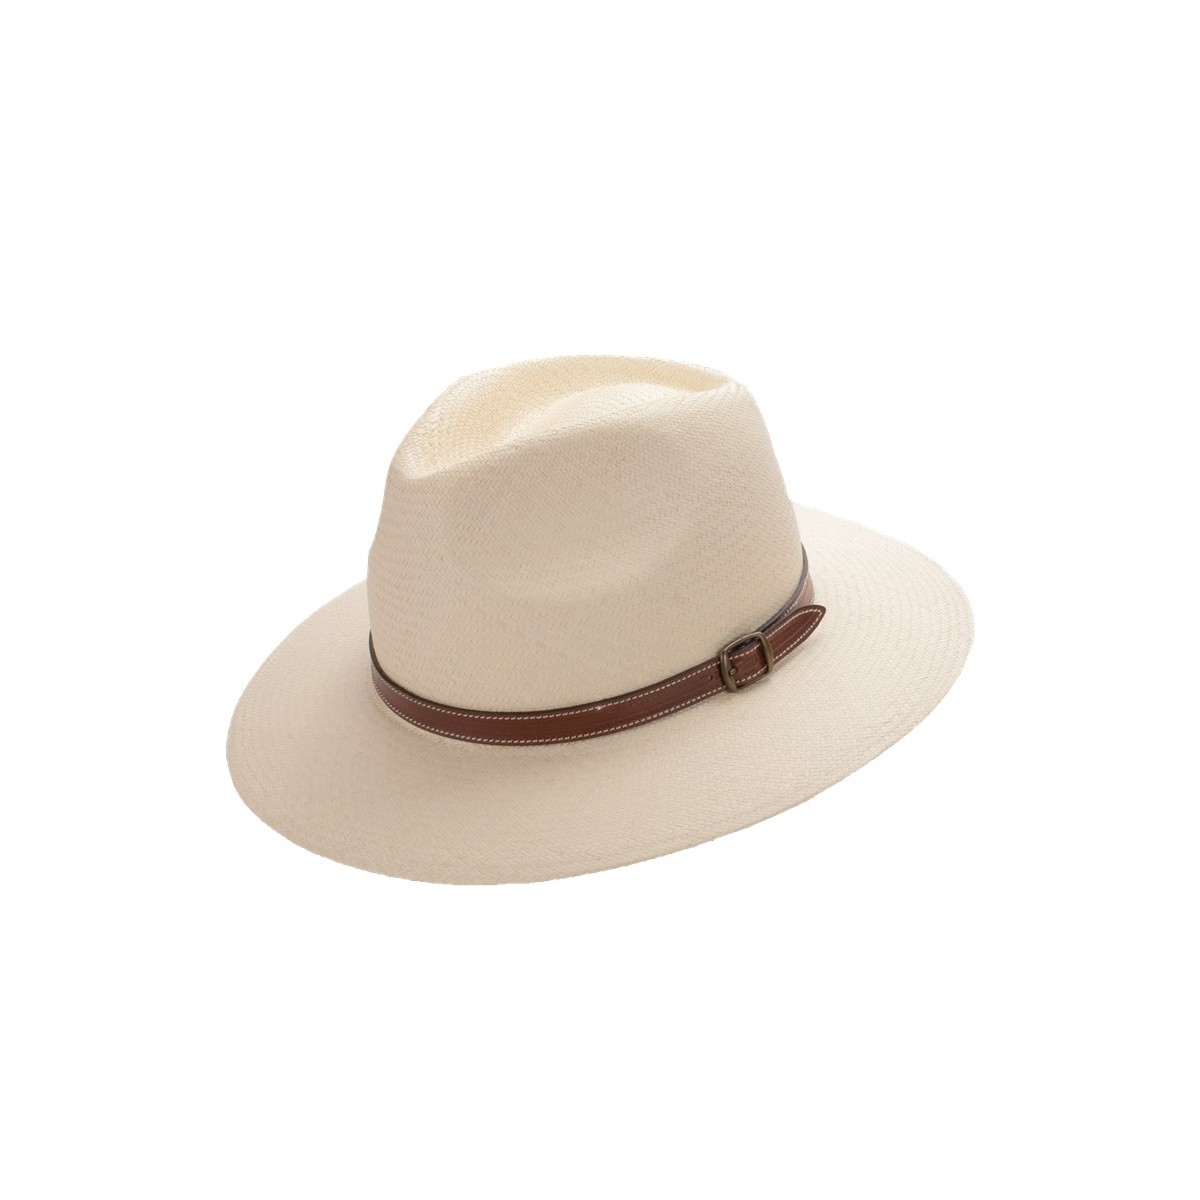 Cubo enlace chocar Aser sombrero panamá copa safari color natural y correa de piel marron con  hebilla